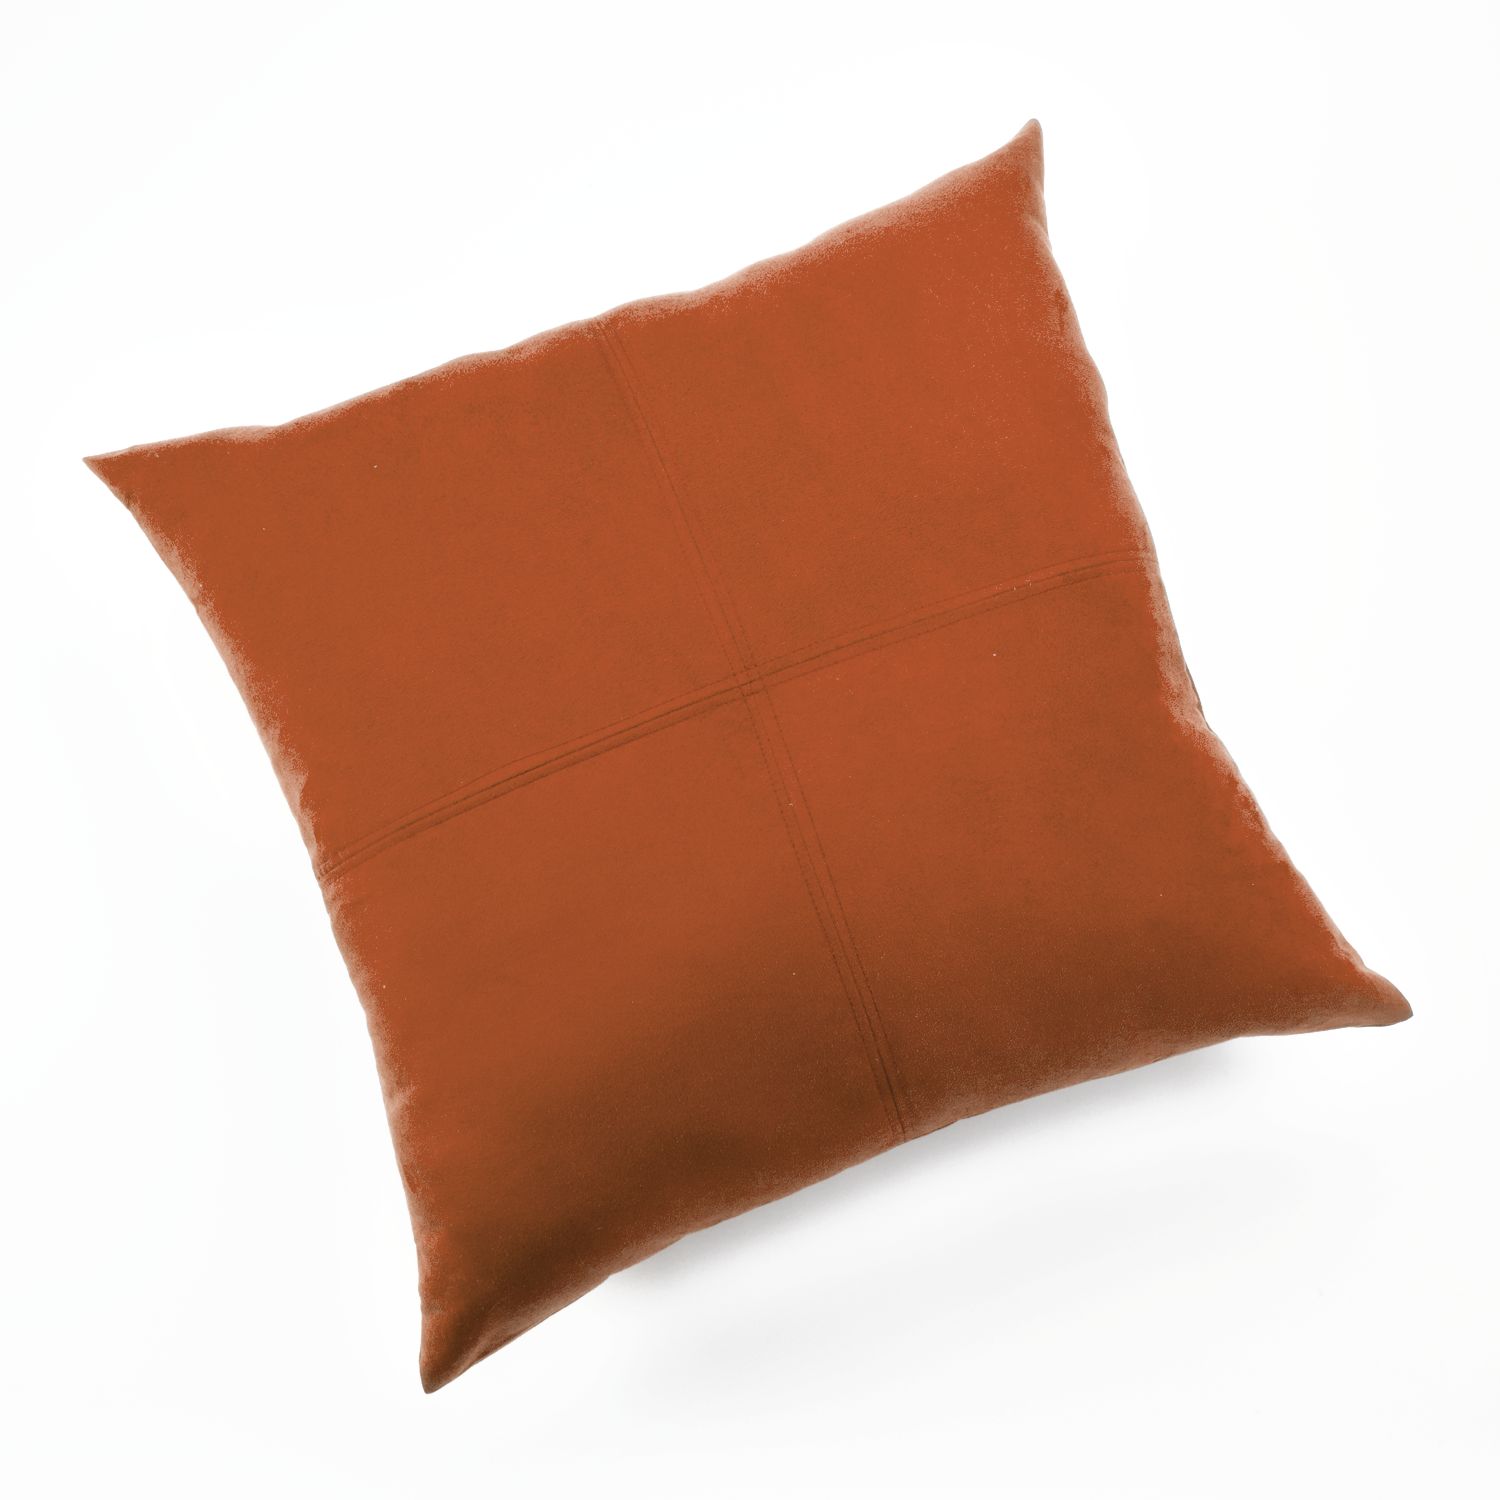 orange fuzzy pillow